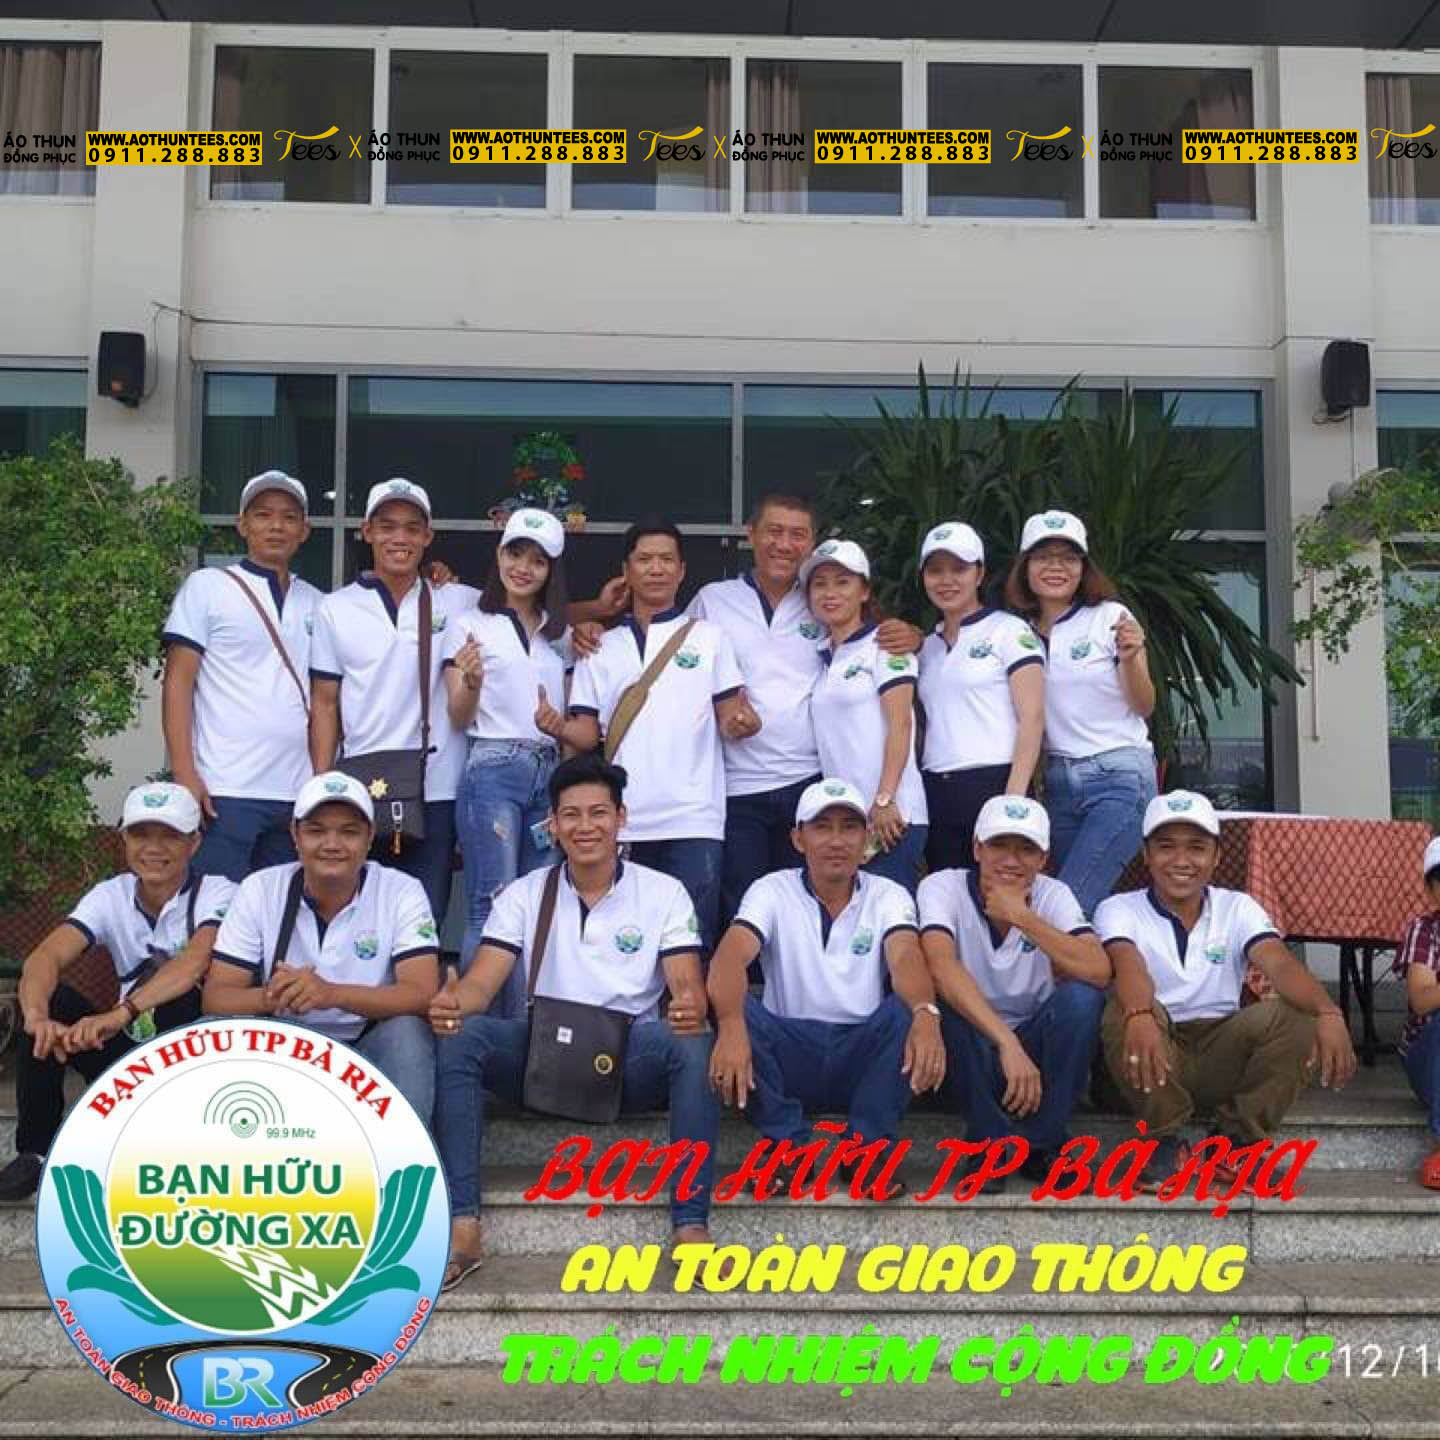 #1 Xưởng may áo thun, nón đồng phục bạn hữu đường xa bền và đẹp tại Việt Nam - a63be8d3e3d906875fc8